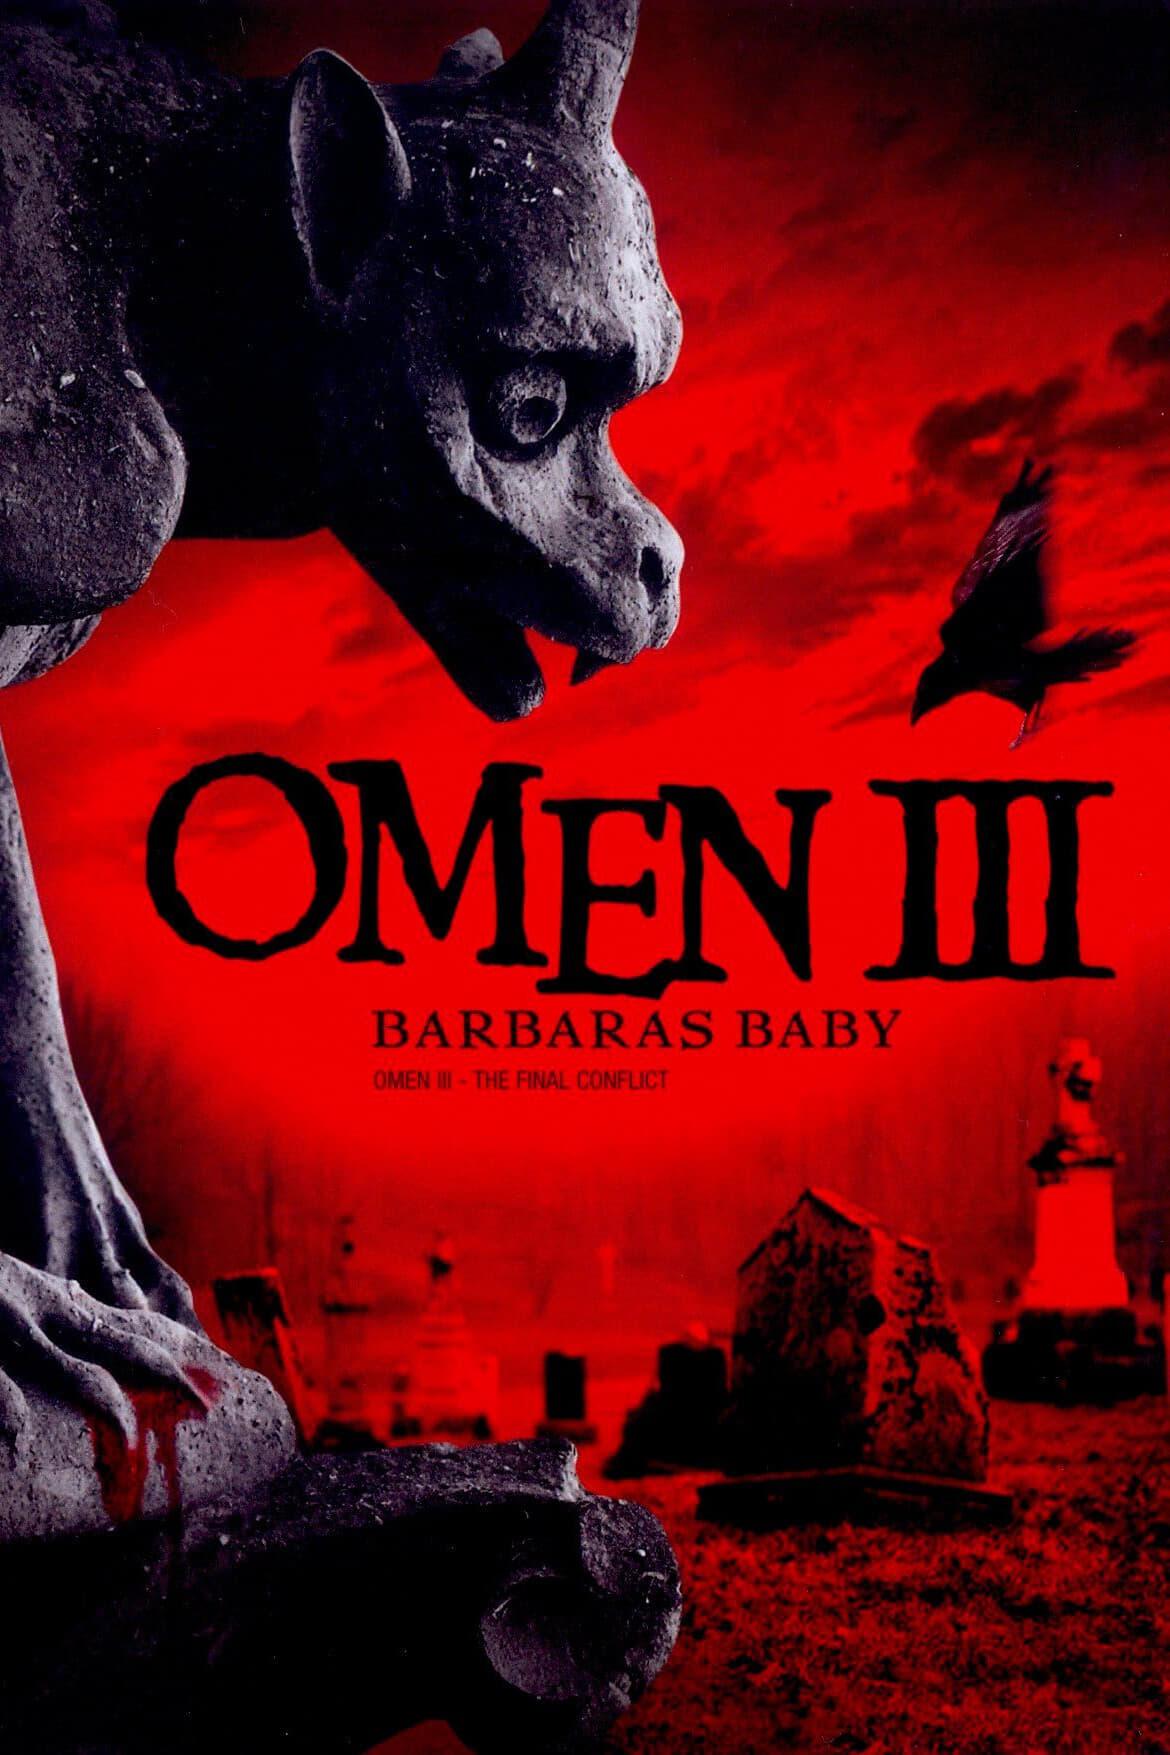 Barbara’s Baby – Omen III poster